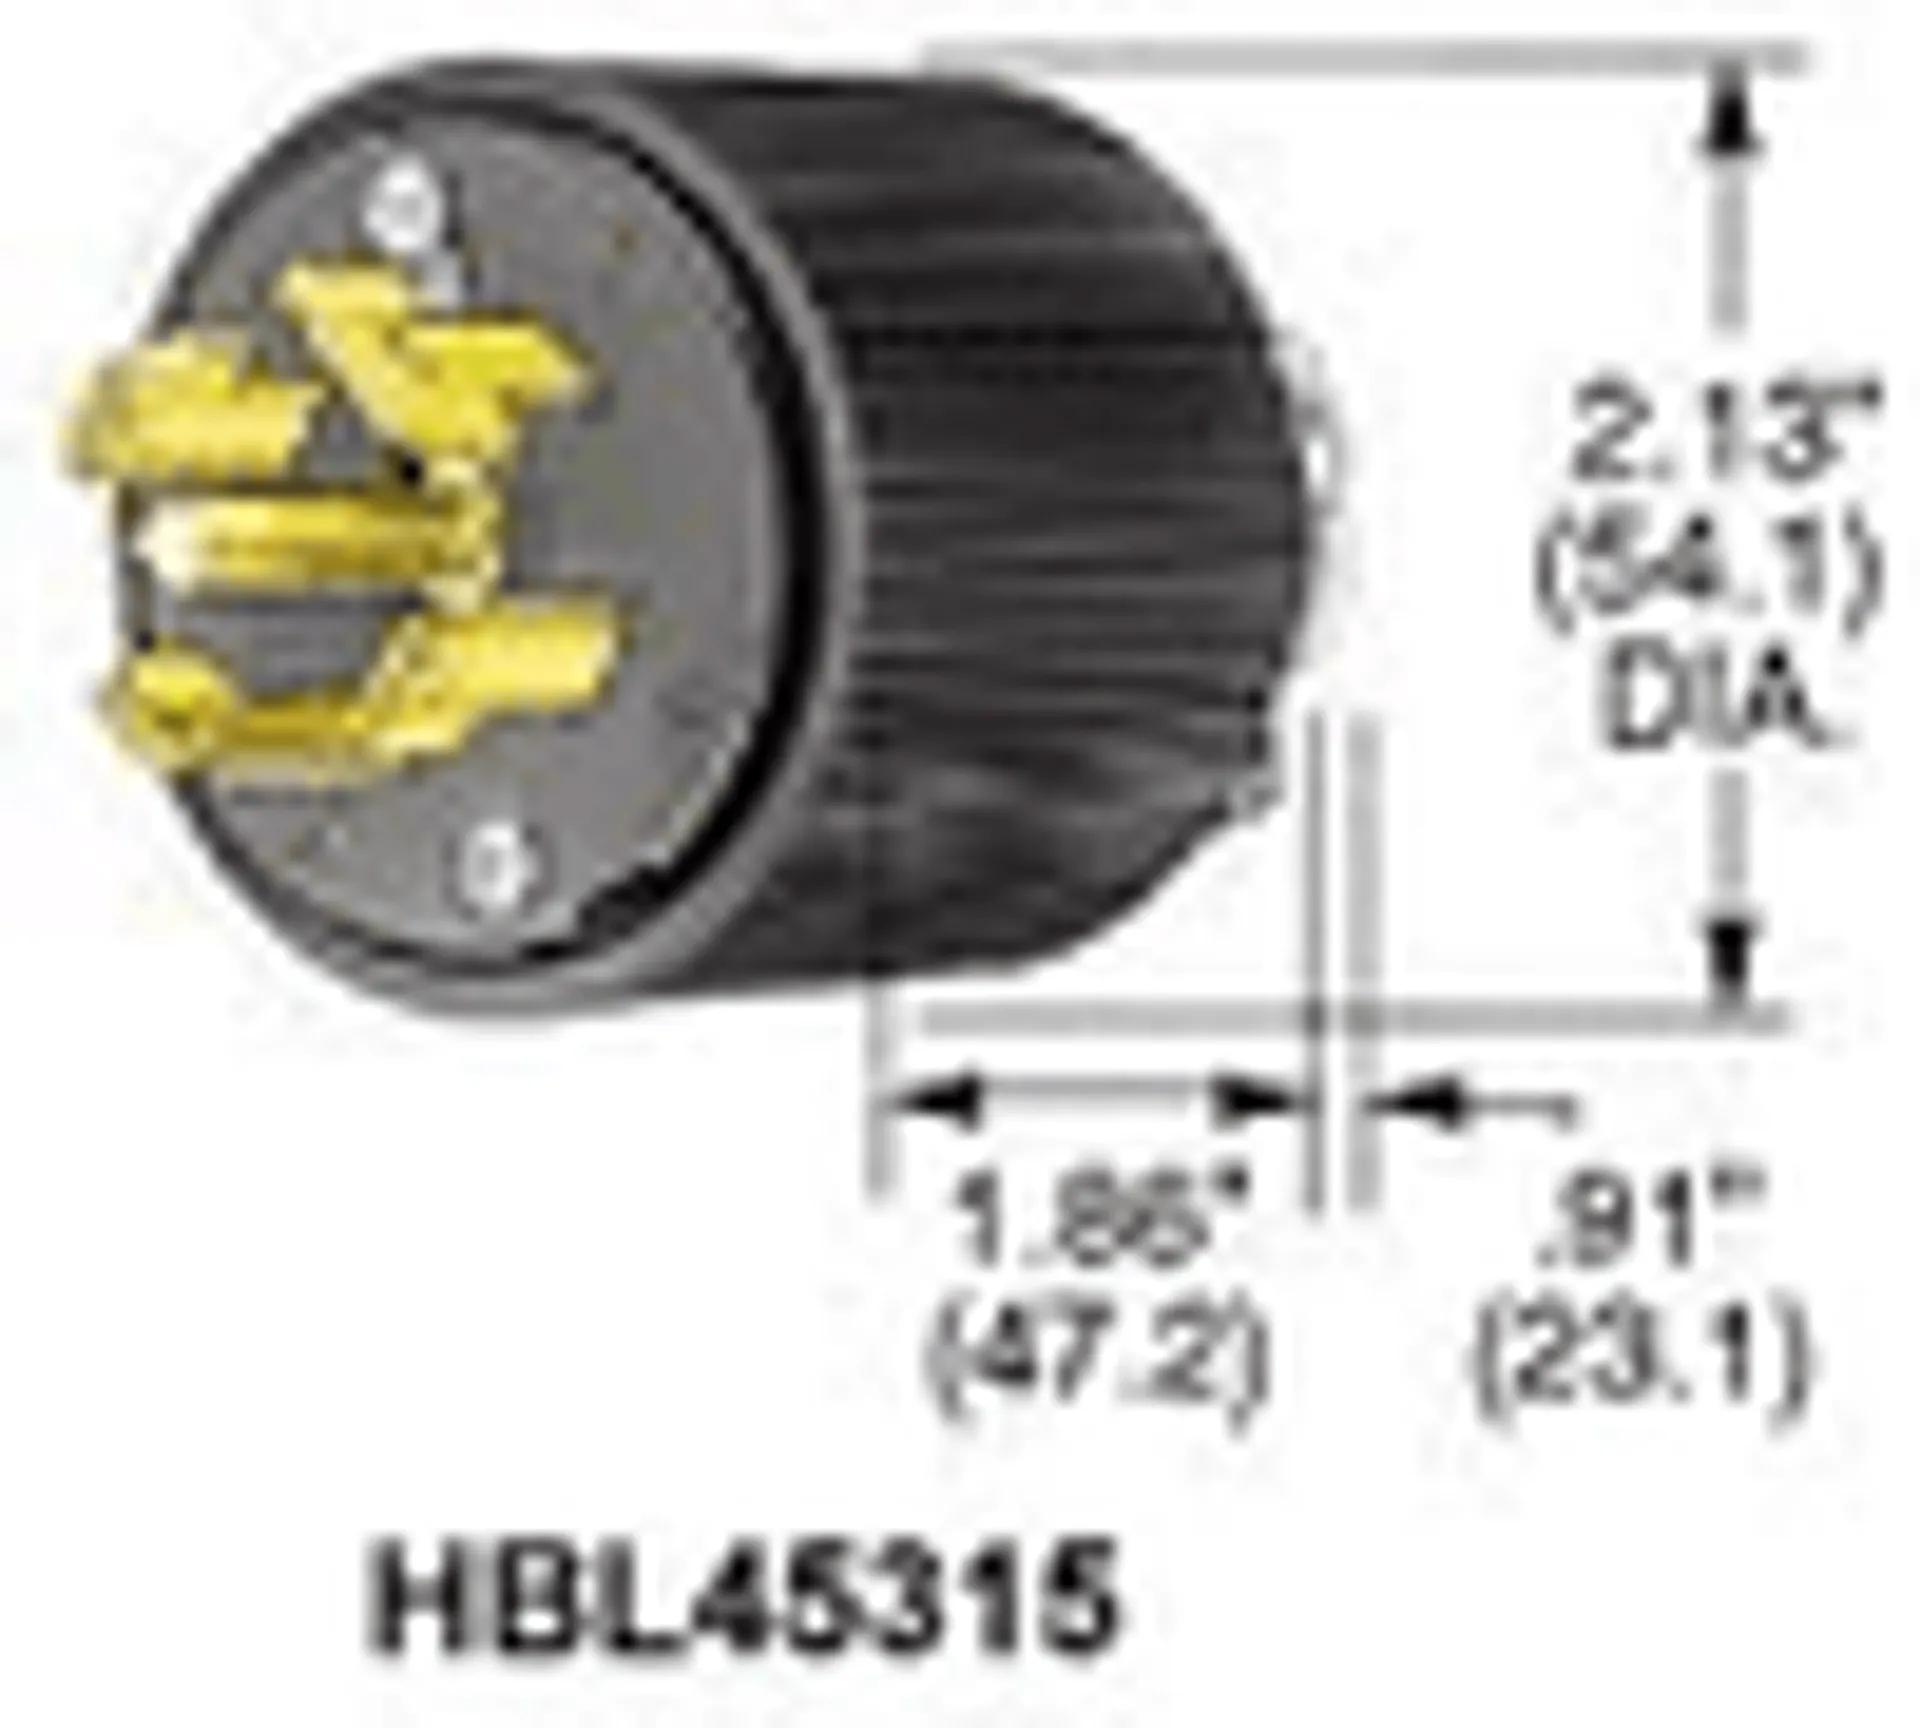 HBL45315